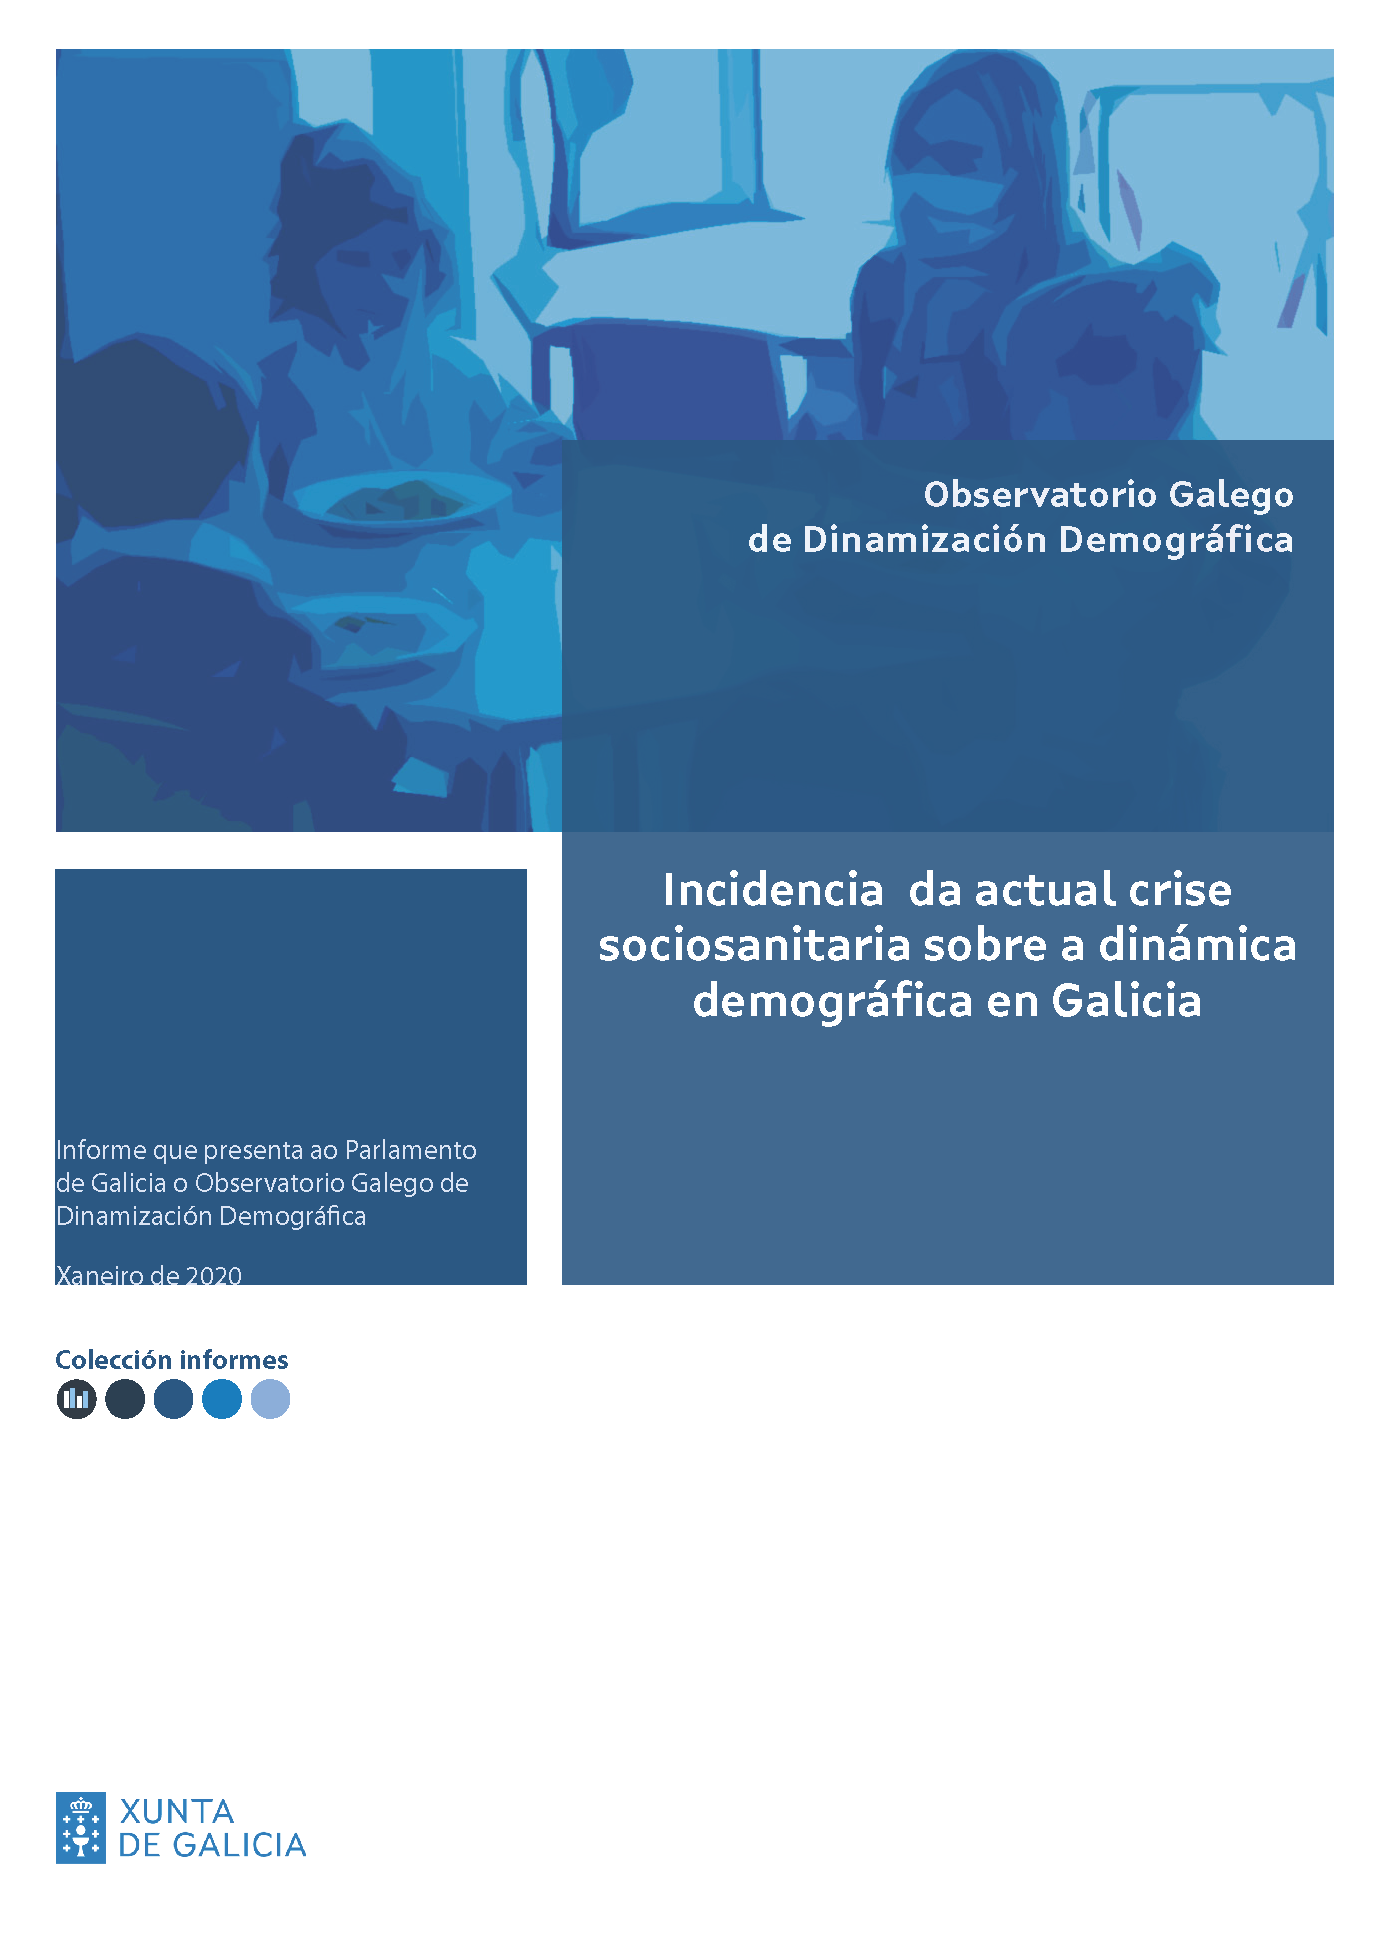 Incidencia da actual crise sociosanitaria sobre a dinámica demográfica en Galicia